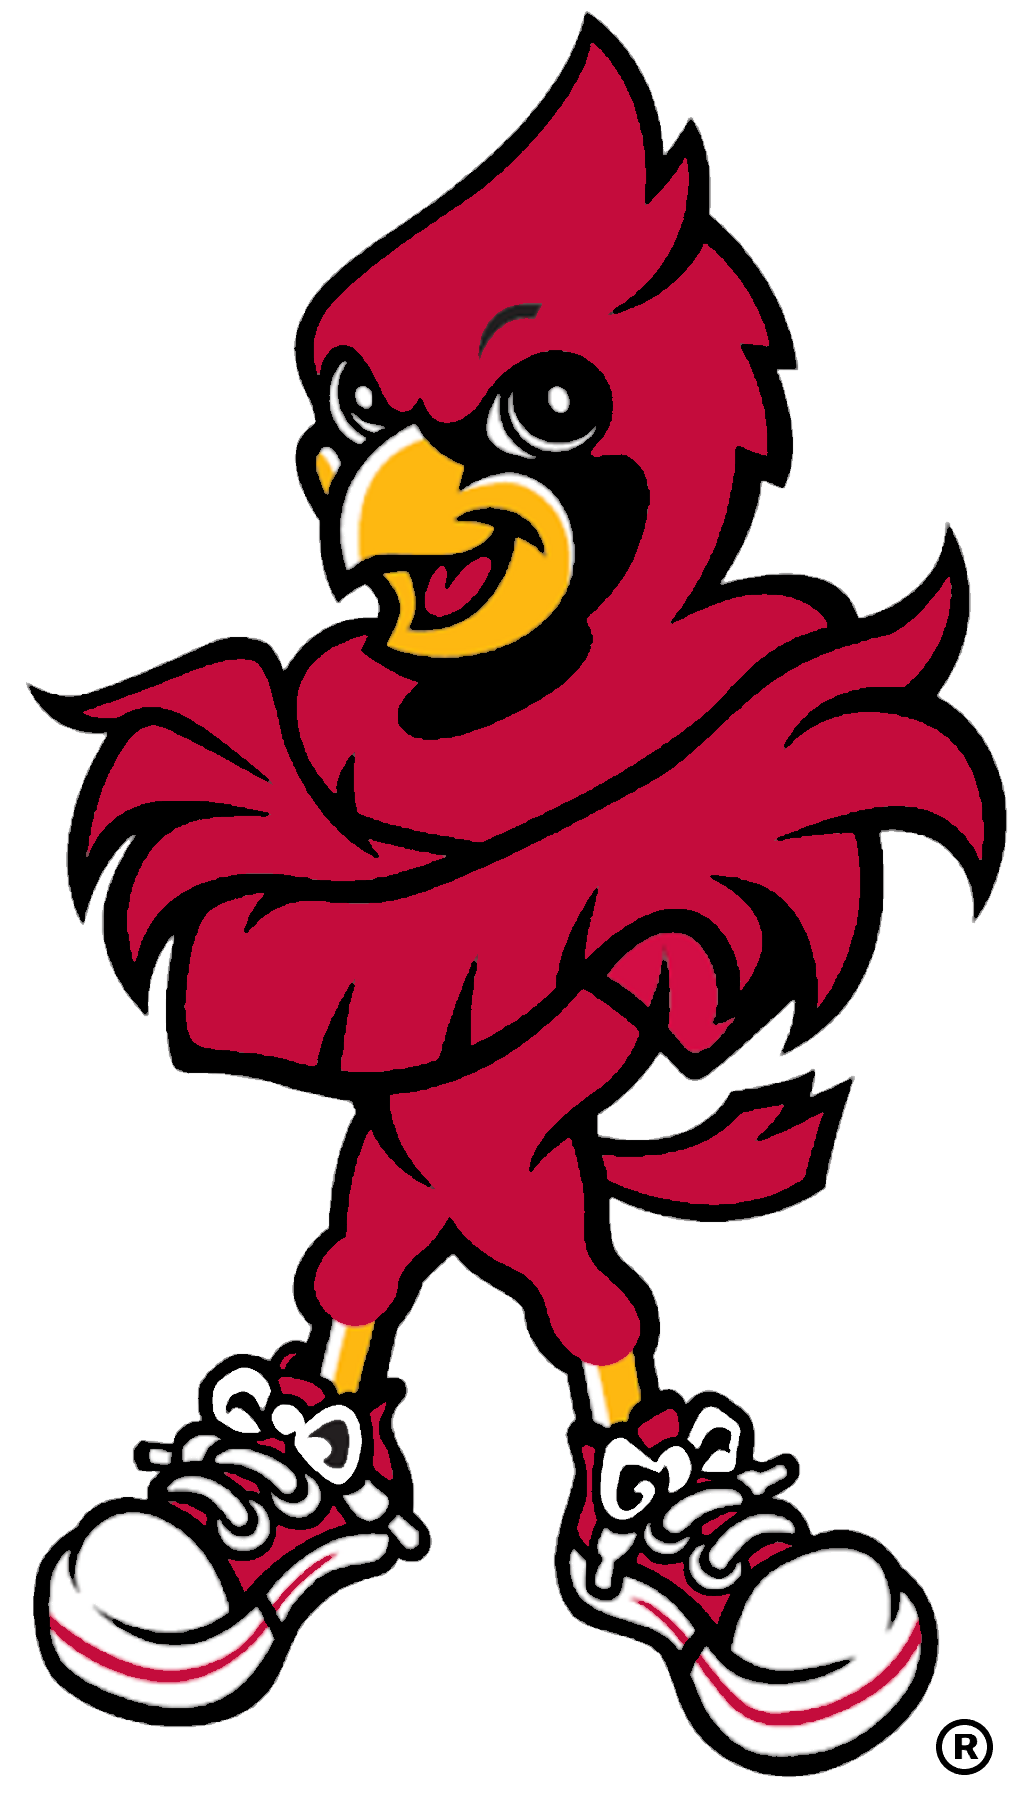 Louisville Cardinals football - Wikipedia